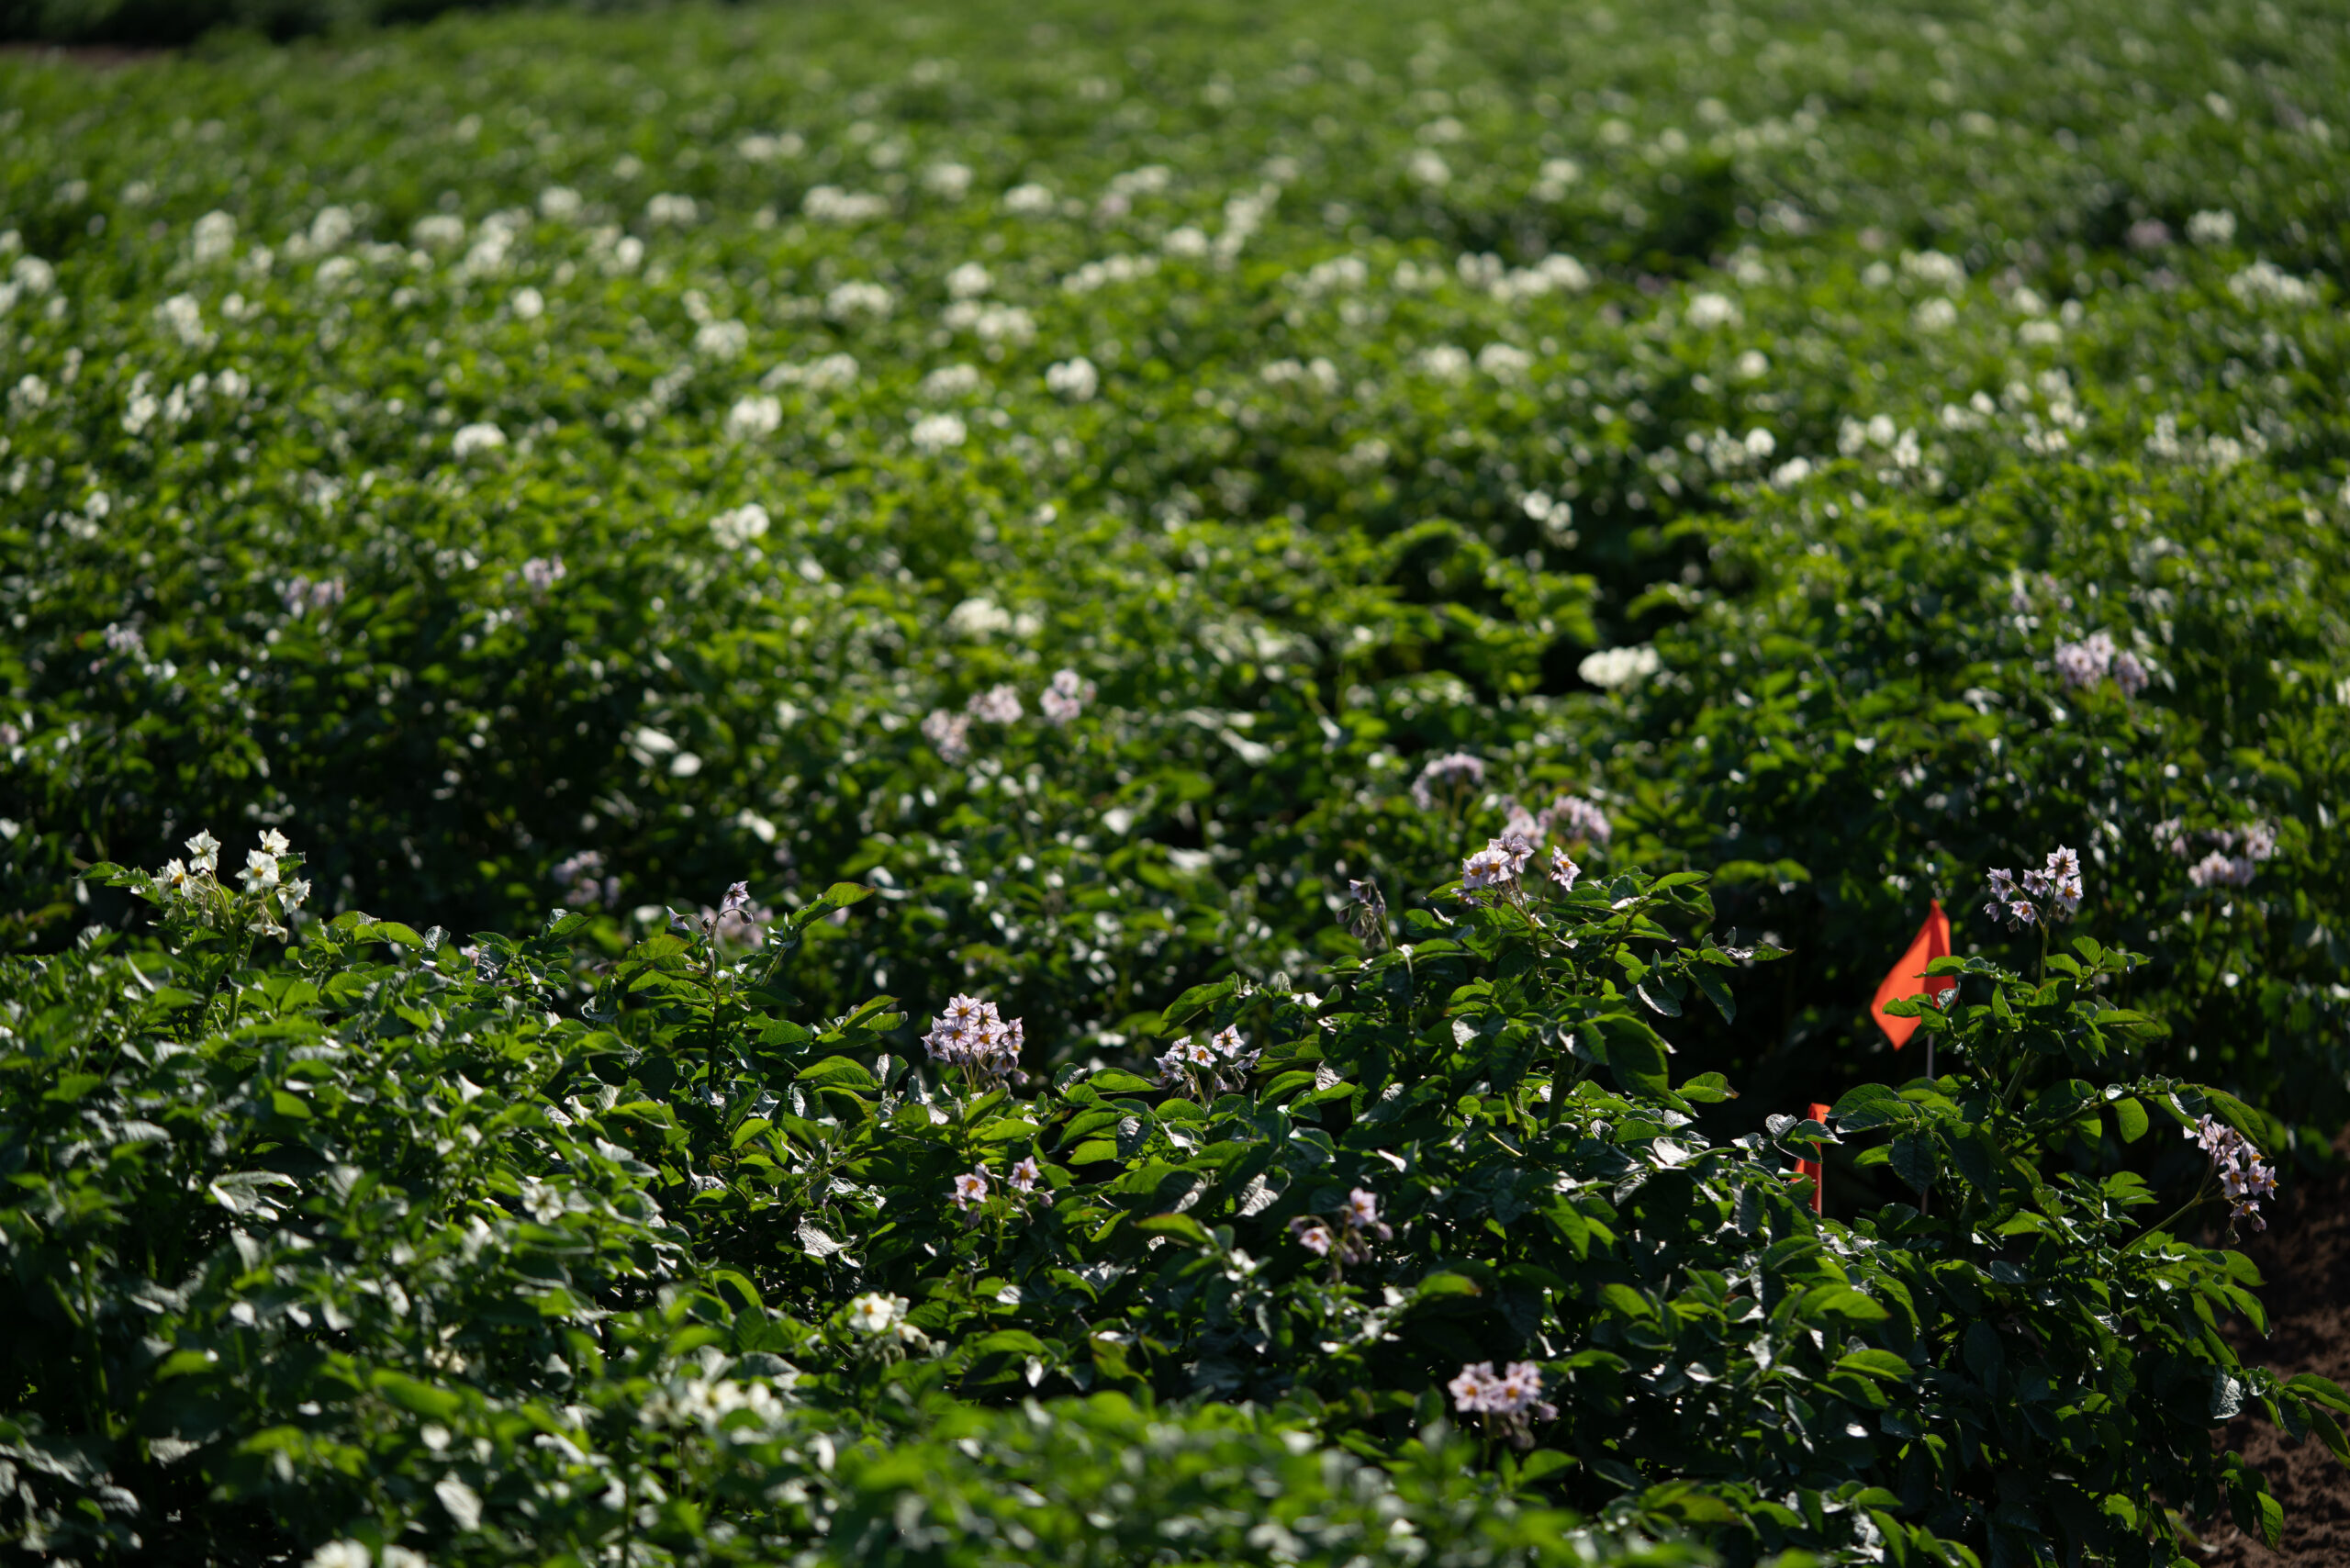 potato flowers in bloom on a field